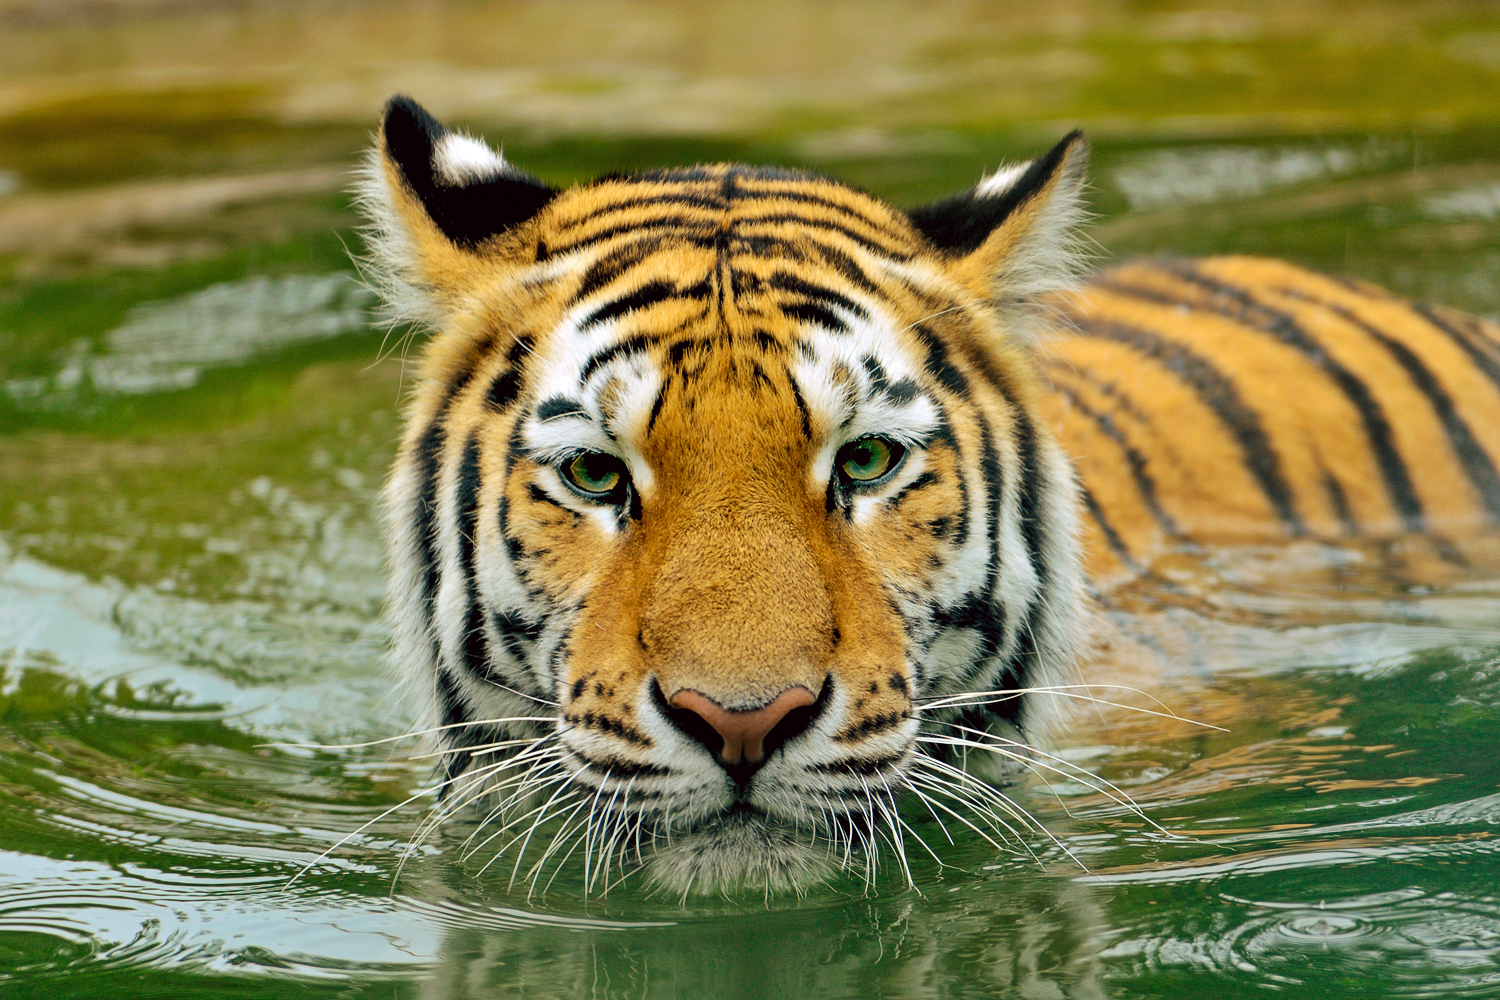 Végleg rács mögé kerül egy három ember halálát okozó tigris Indiában